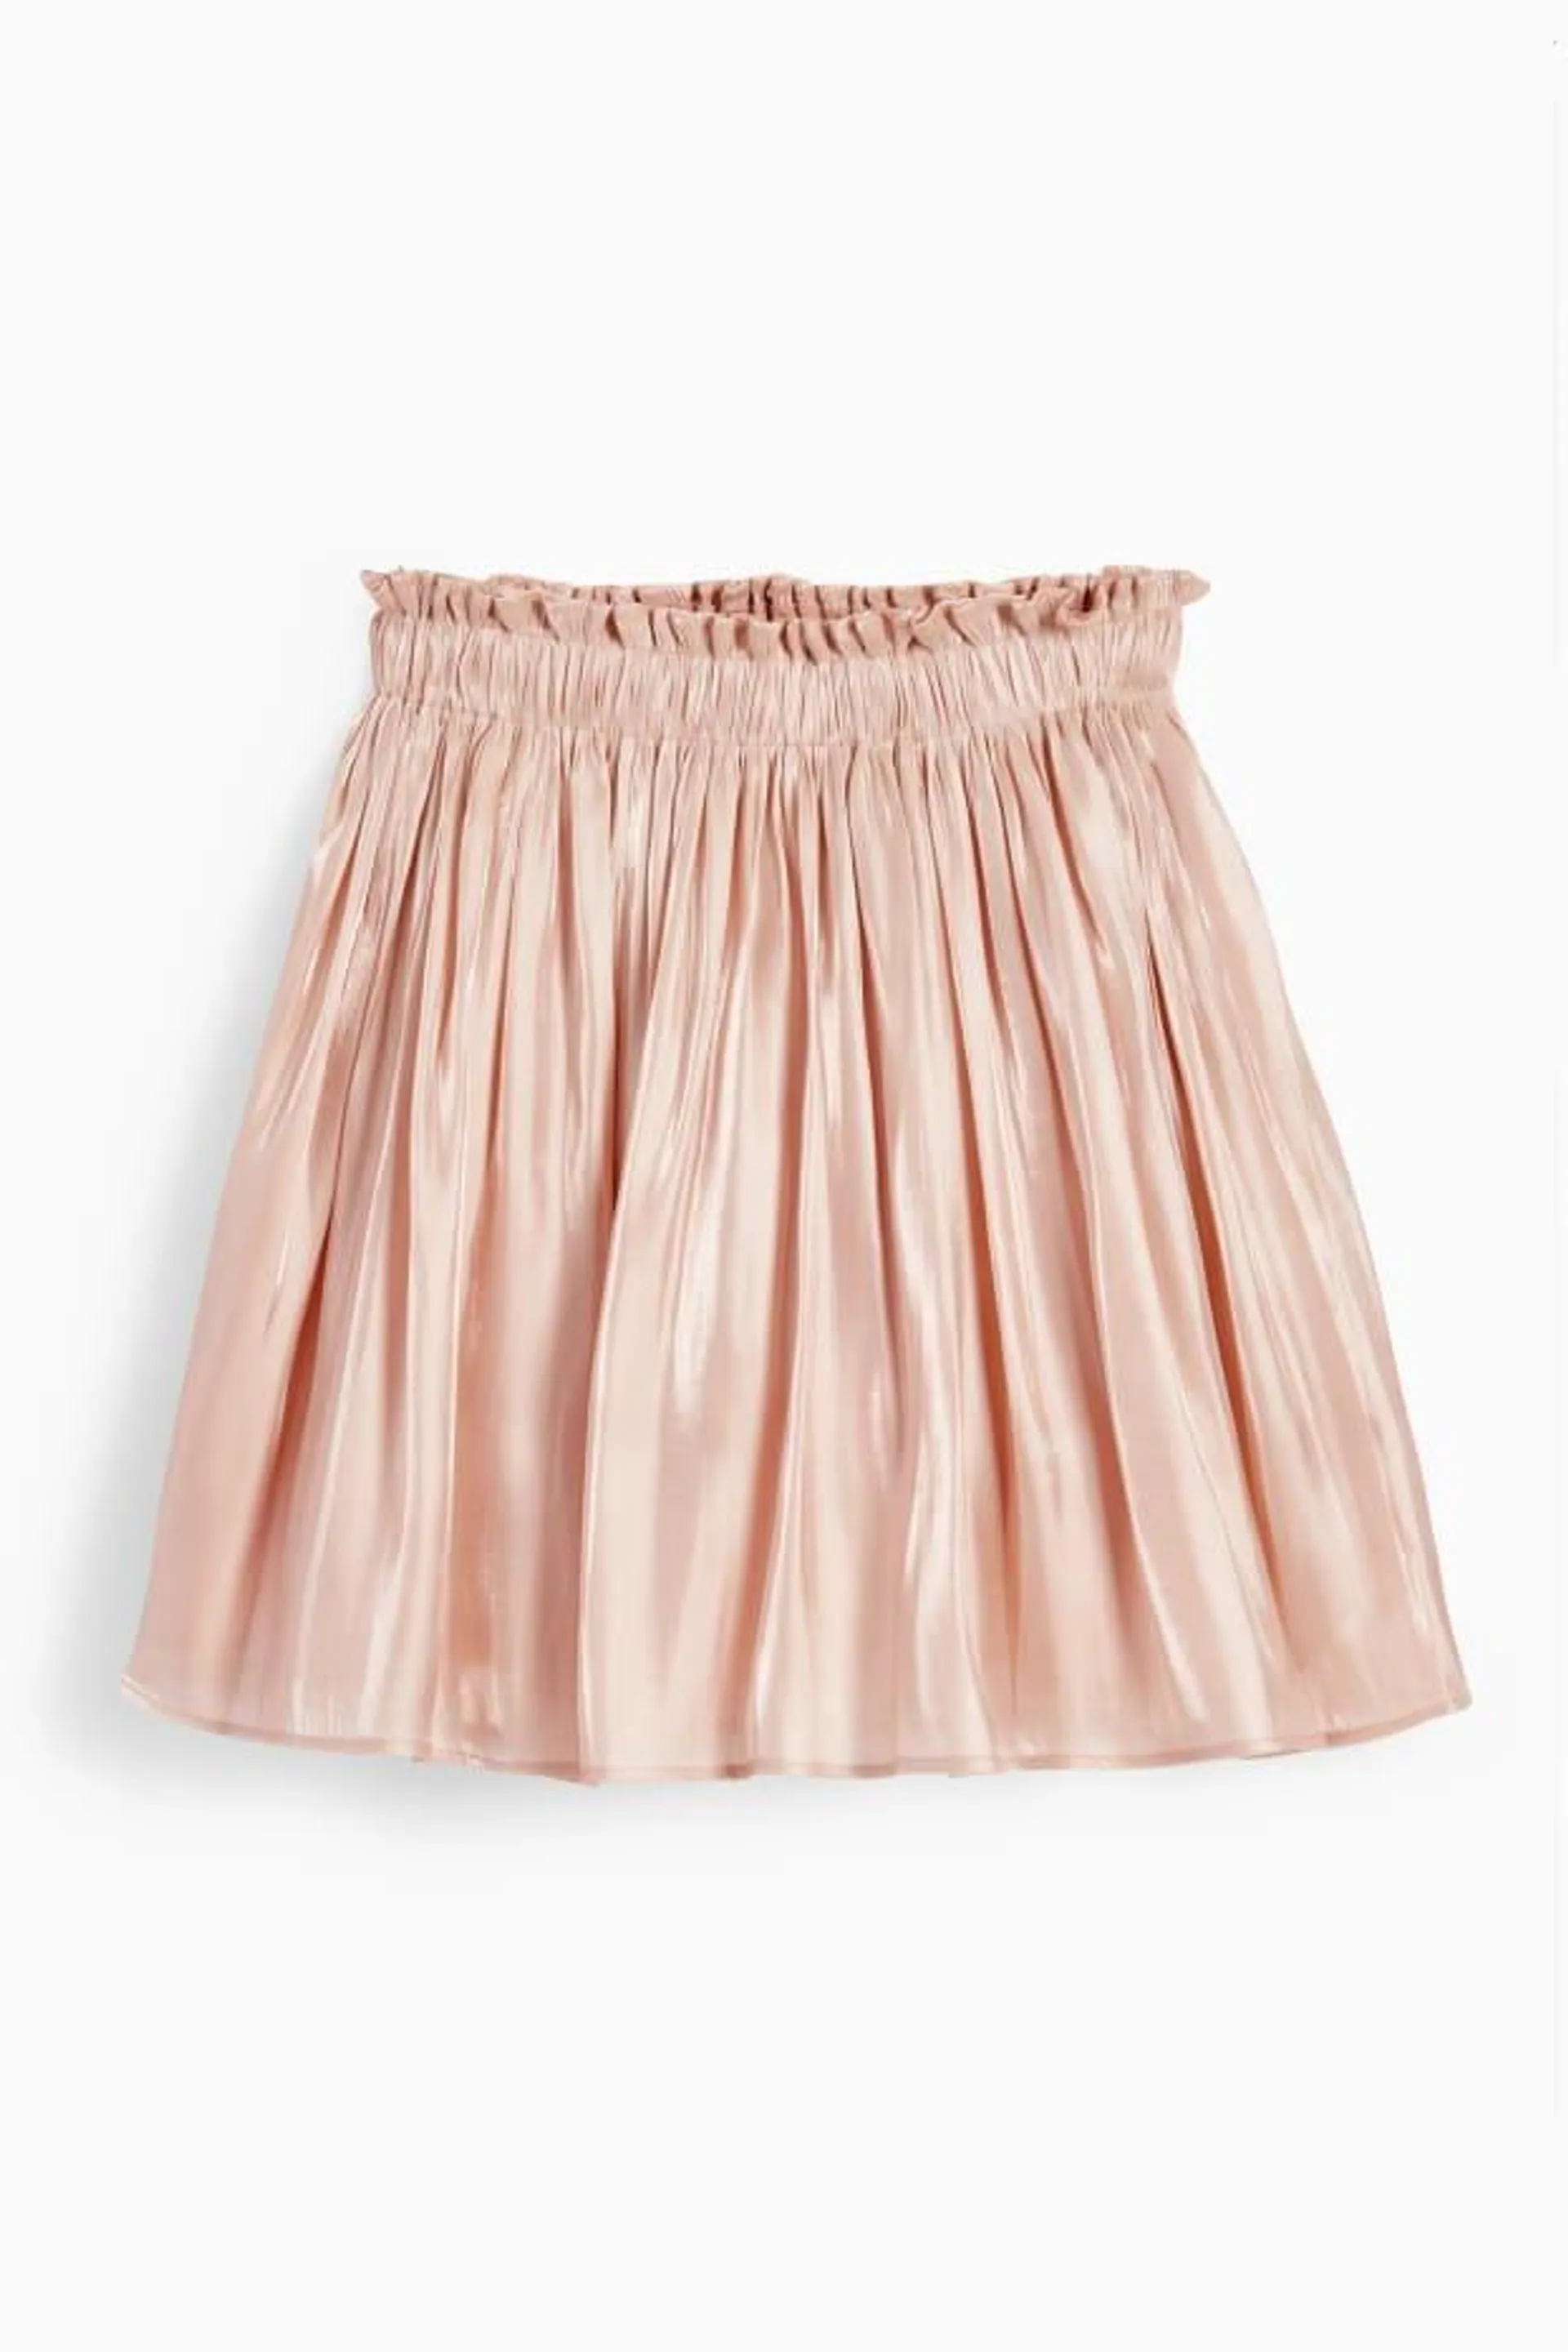 Skirt - shiny